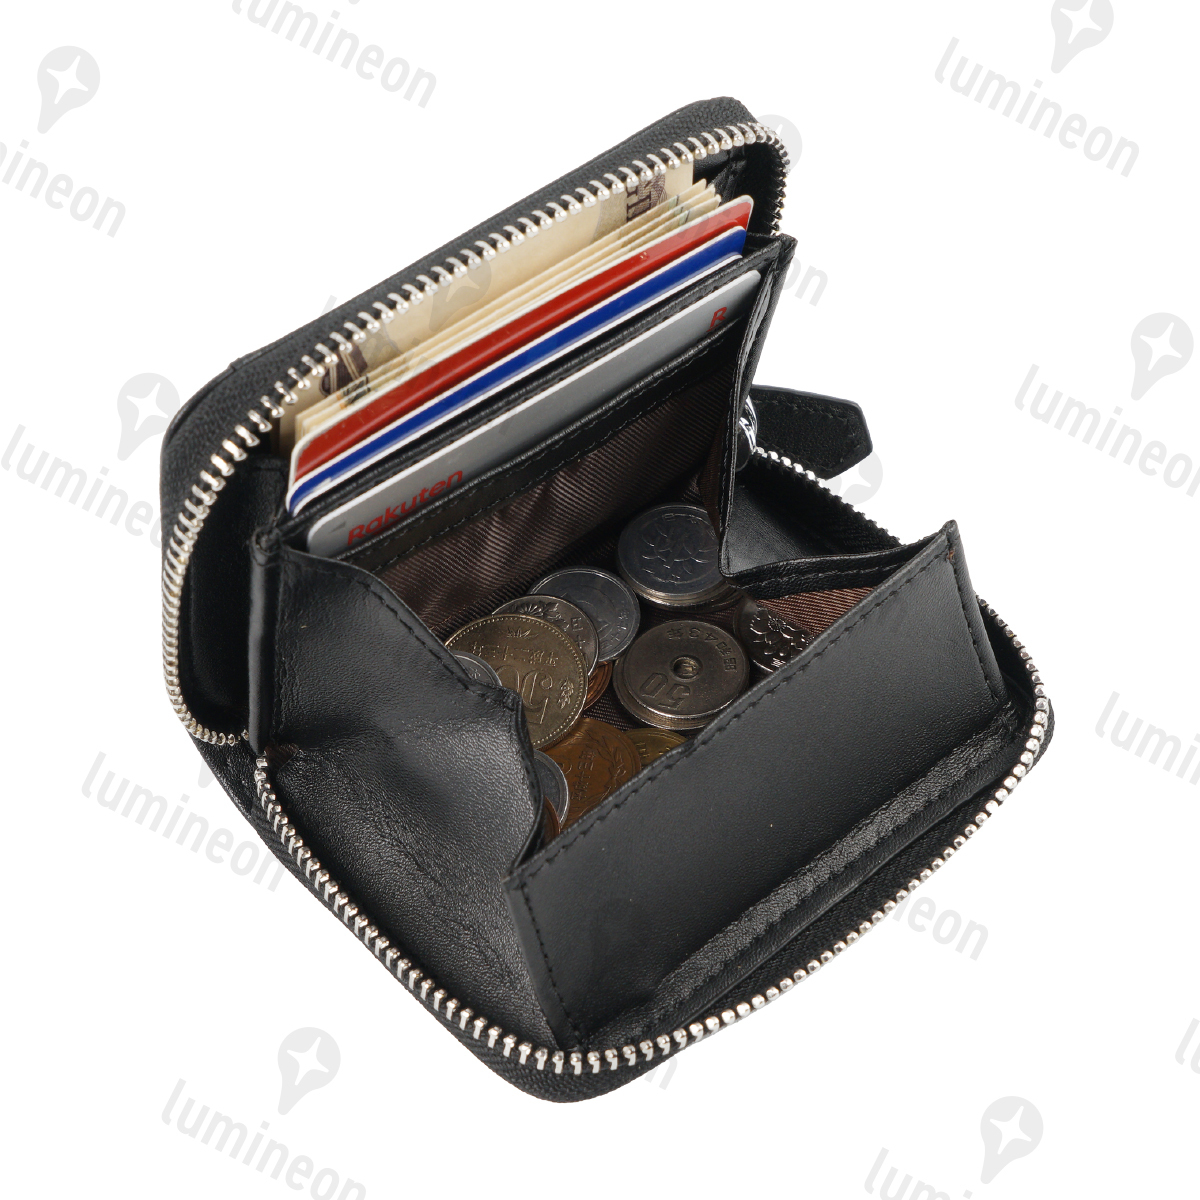 ミニ財布 コインケース スキミング防止 本革 小銭入れ コンパクト 小型 取り出しやすい おしゃれ 運気 金運 レディース メンズ g067f 1